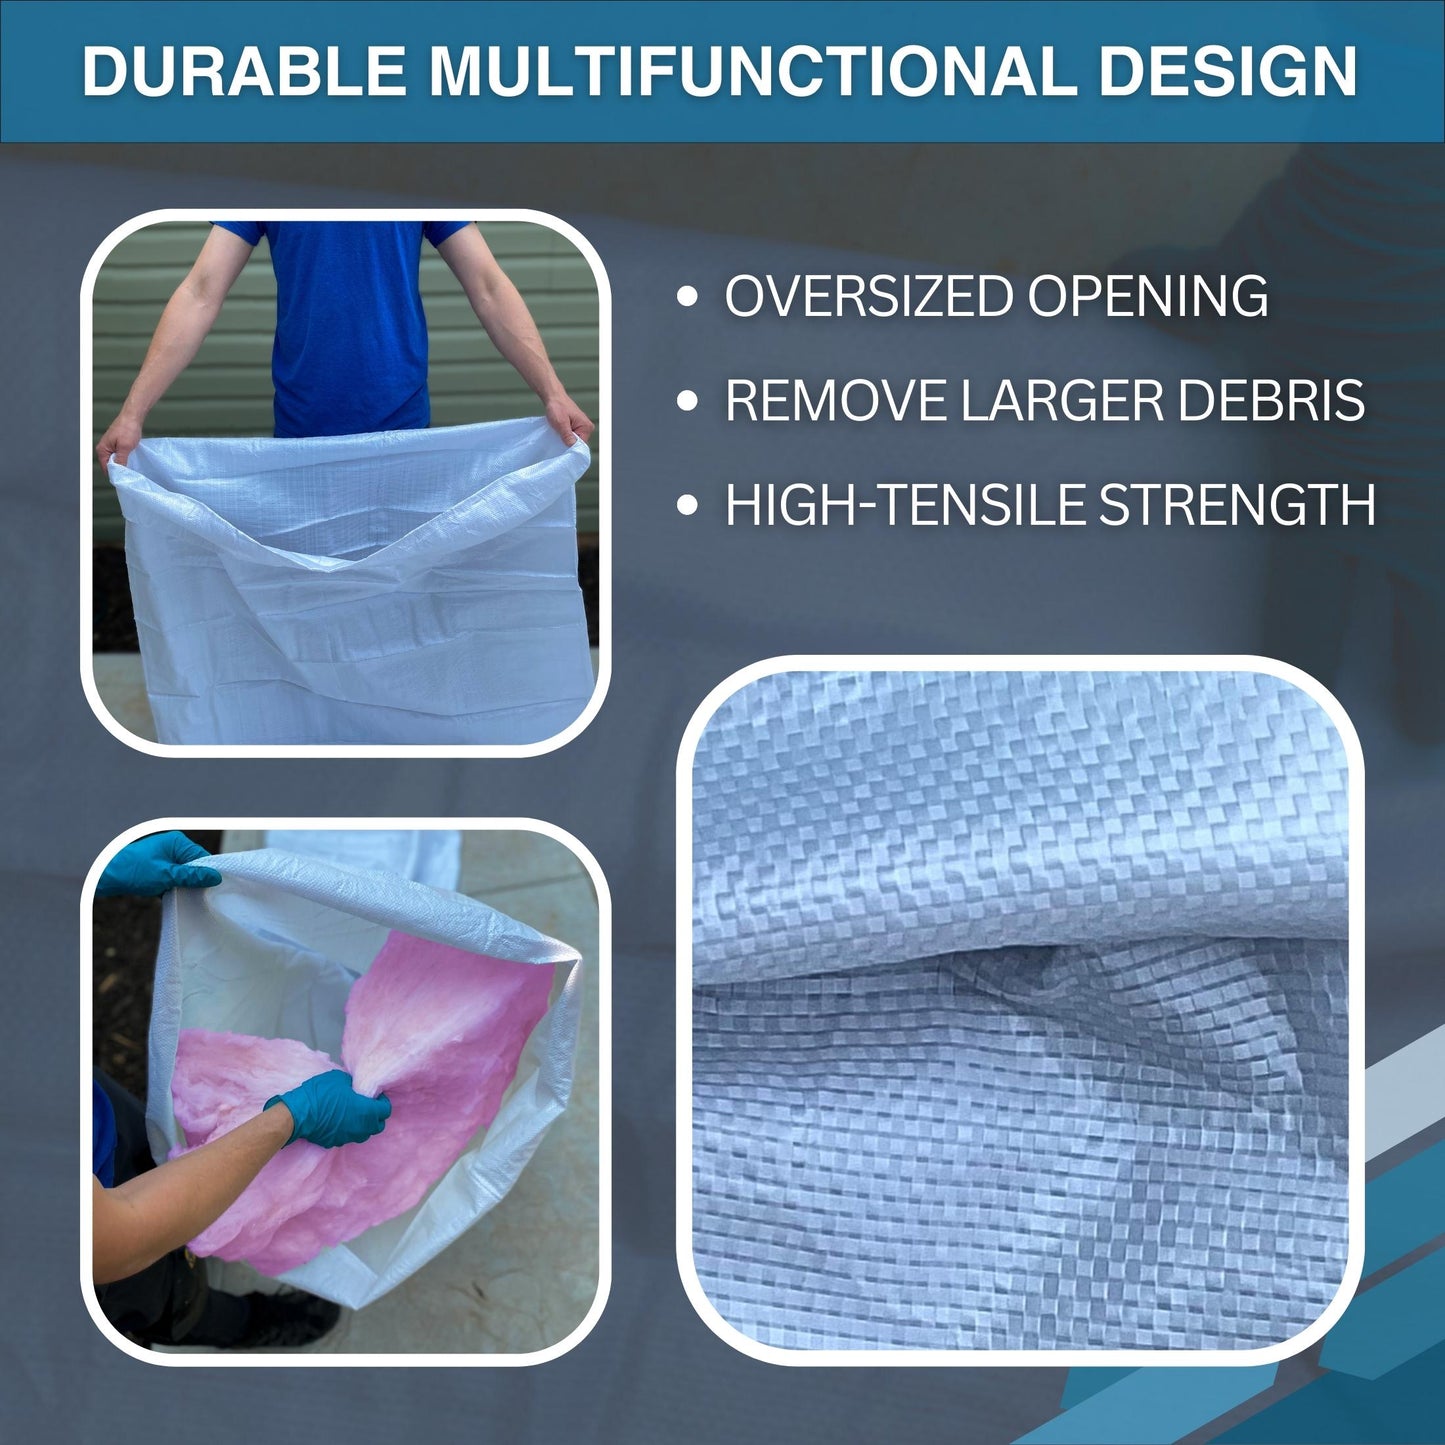 Multifunctional design insulation vacuum bag